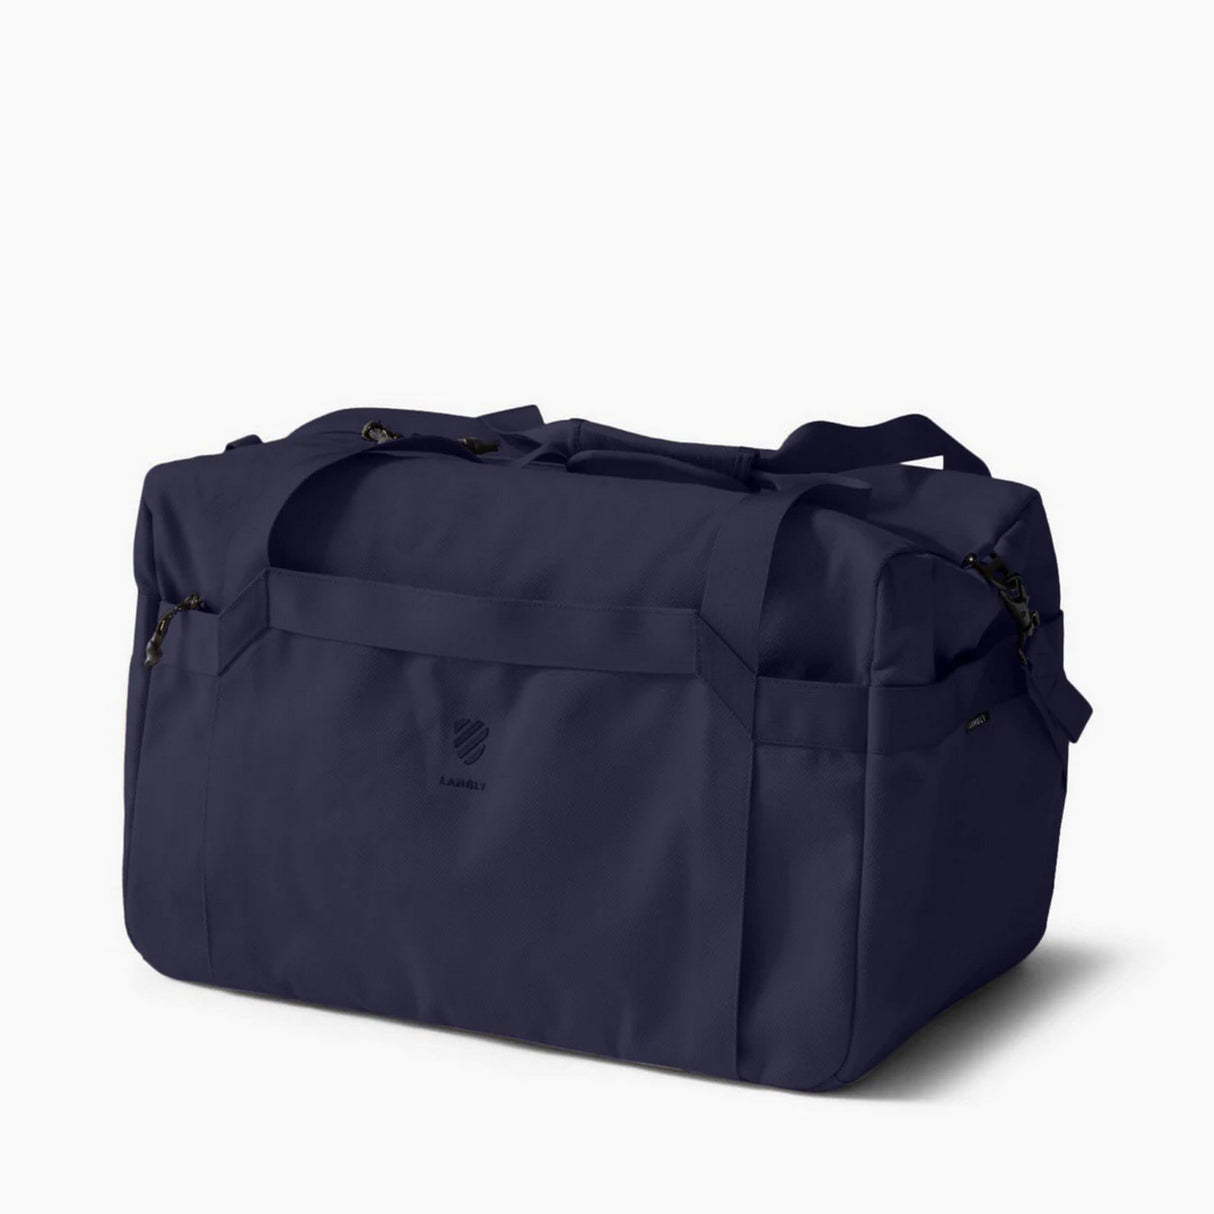 Langly Weekender Duffle Bag, Navy